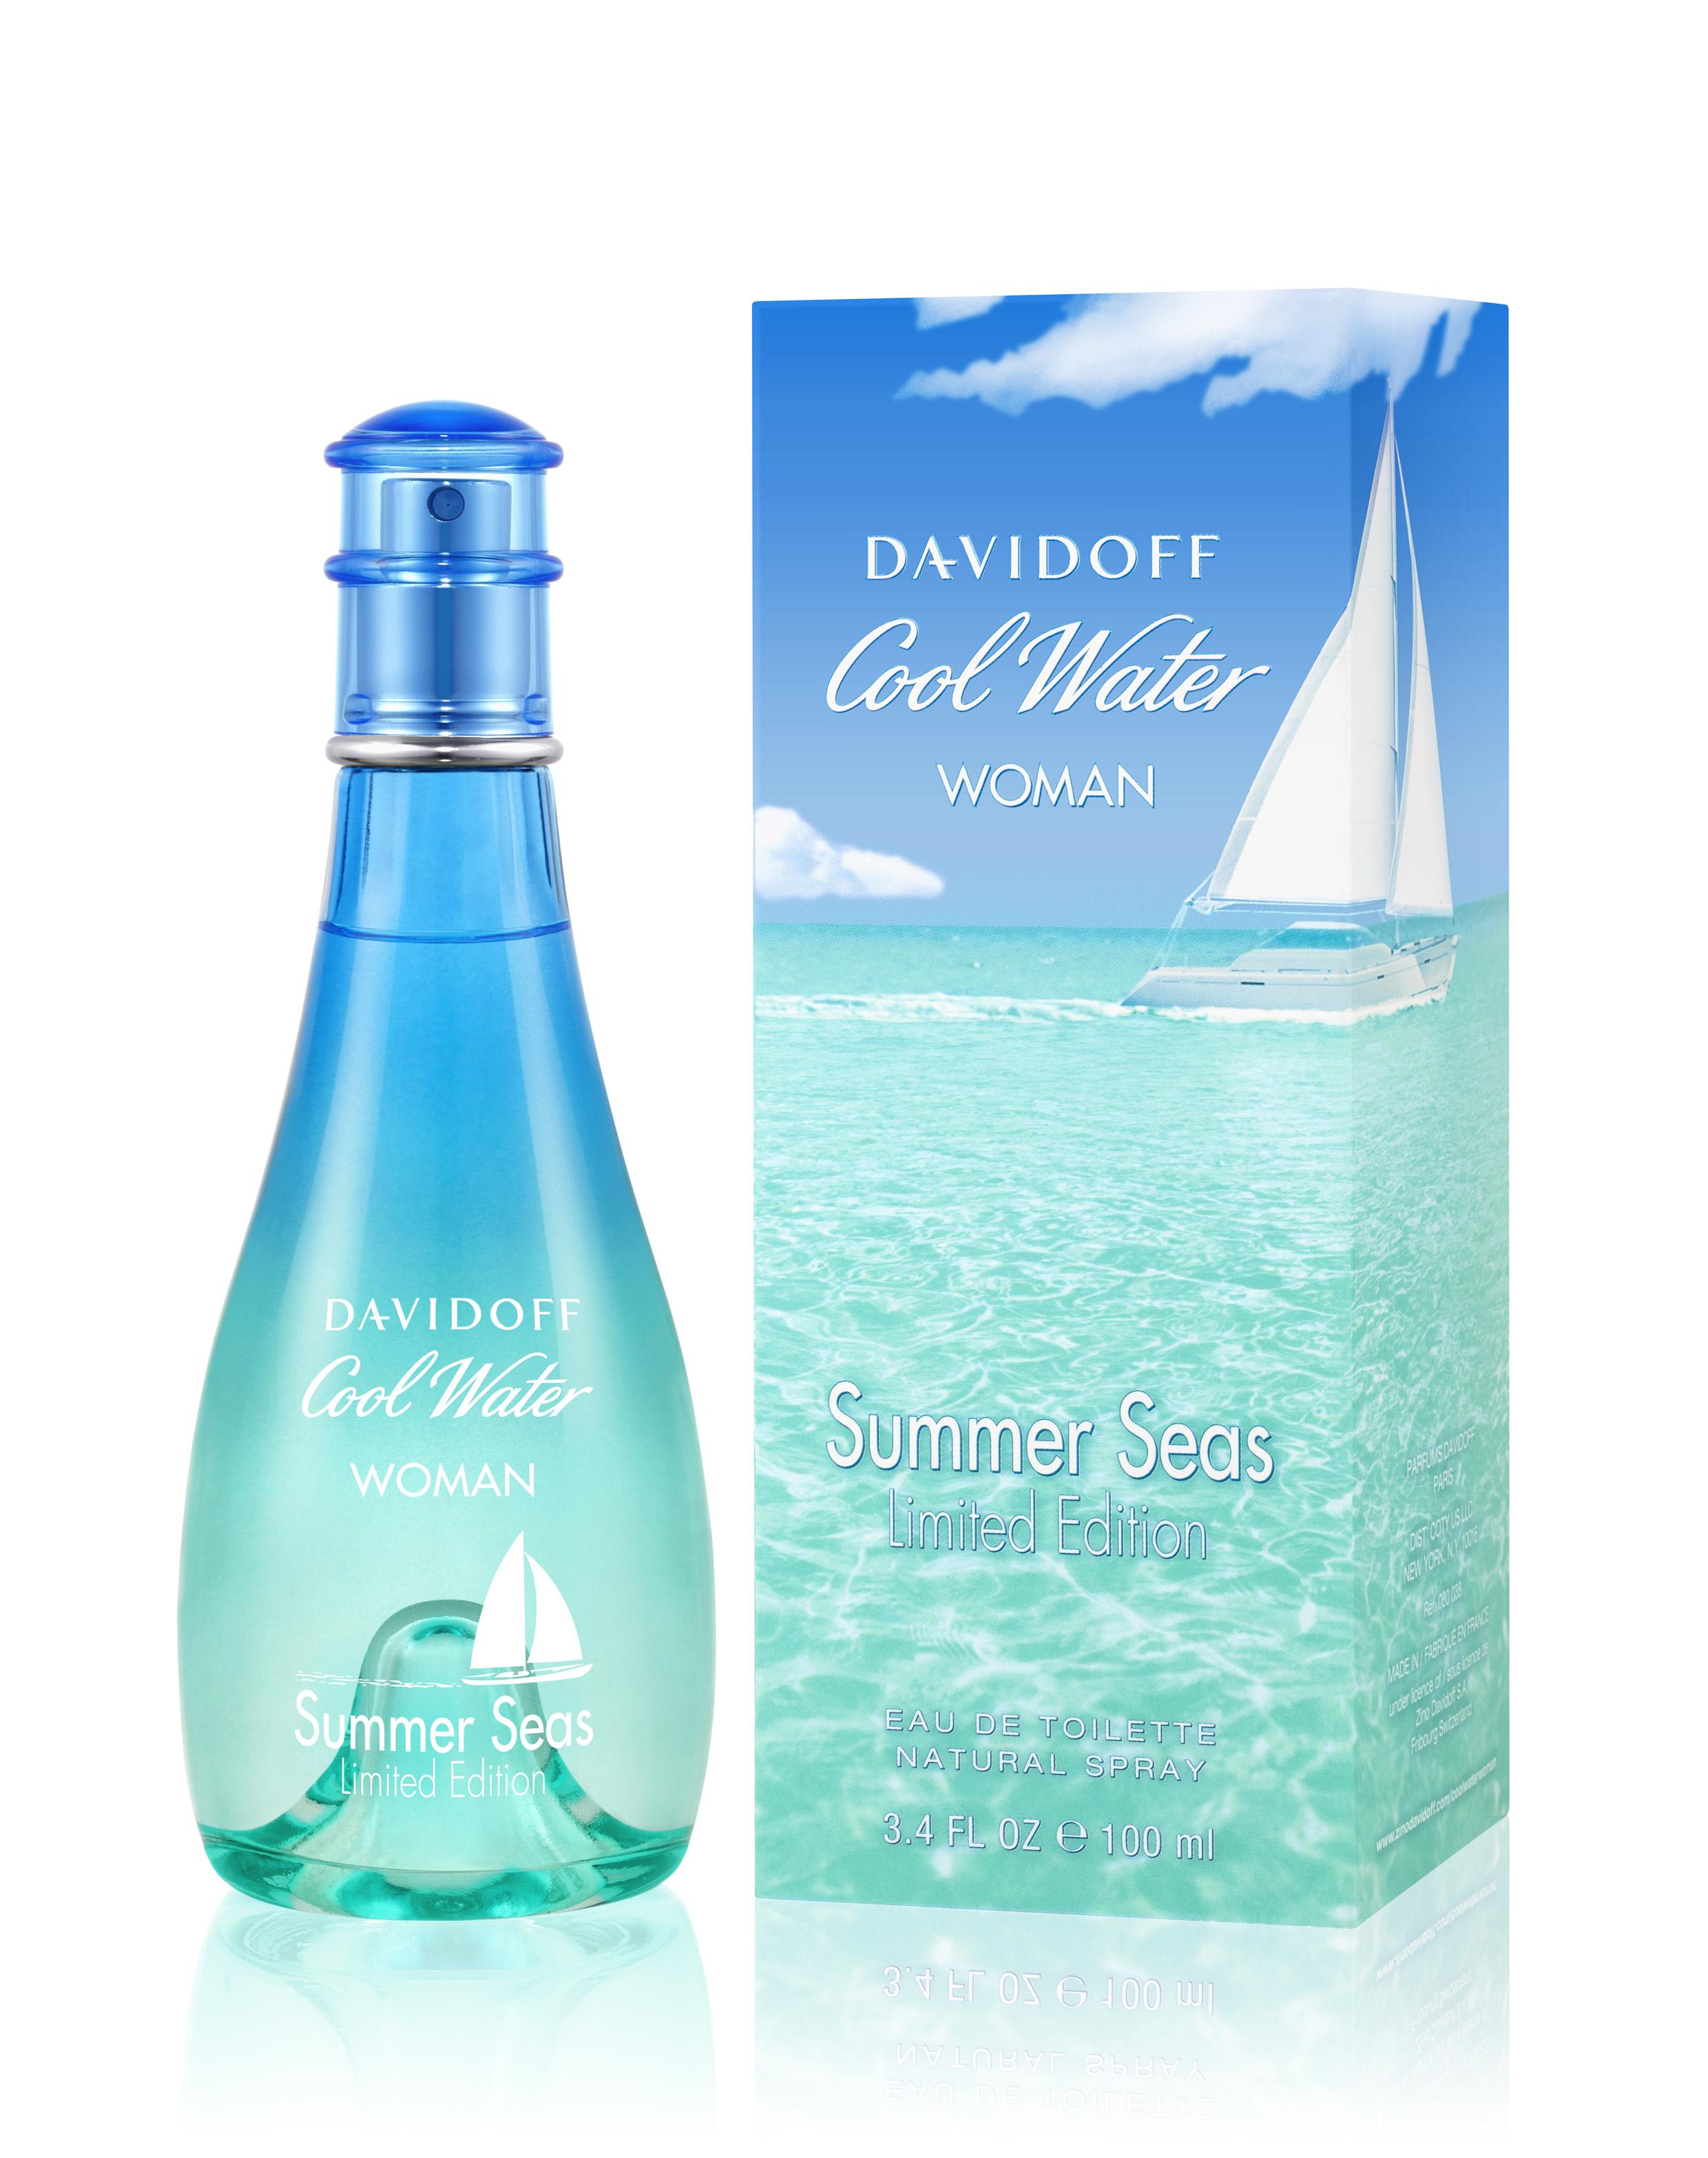 Fruitige geur met iriswortel en lelietjes-van-dalen 'Davidoff Cool Water Woman Summer Seas edition'  - 36 euro